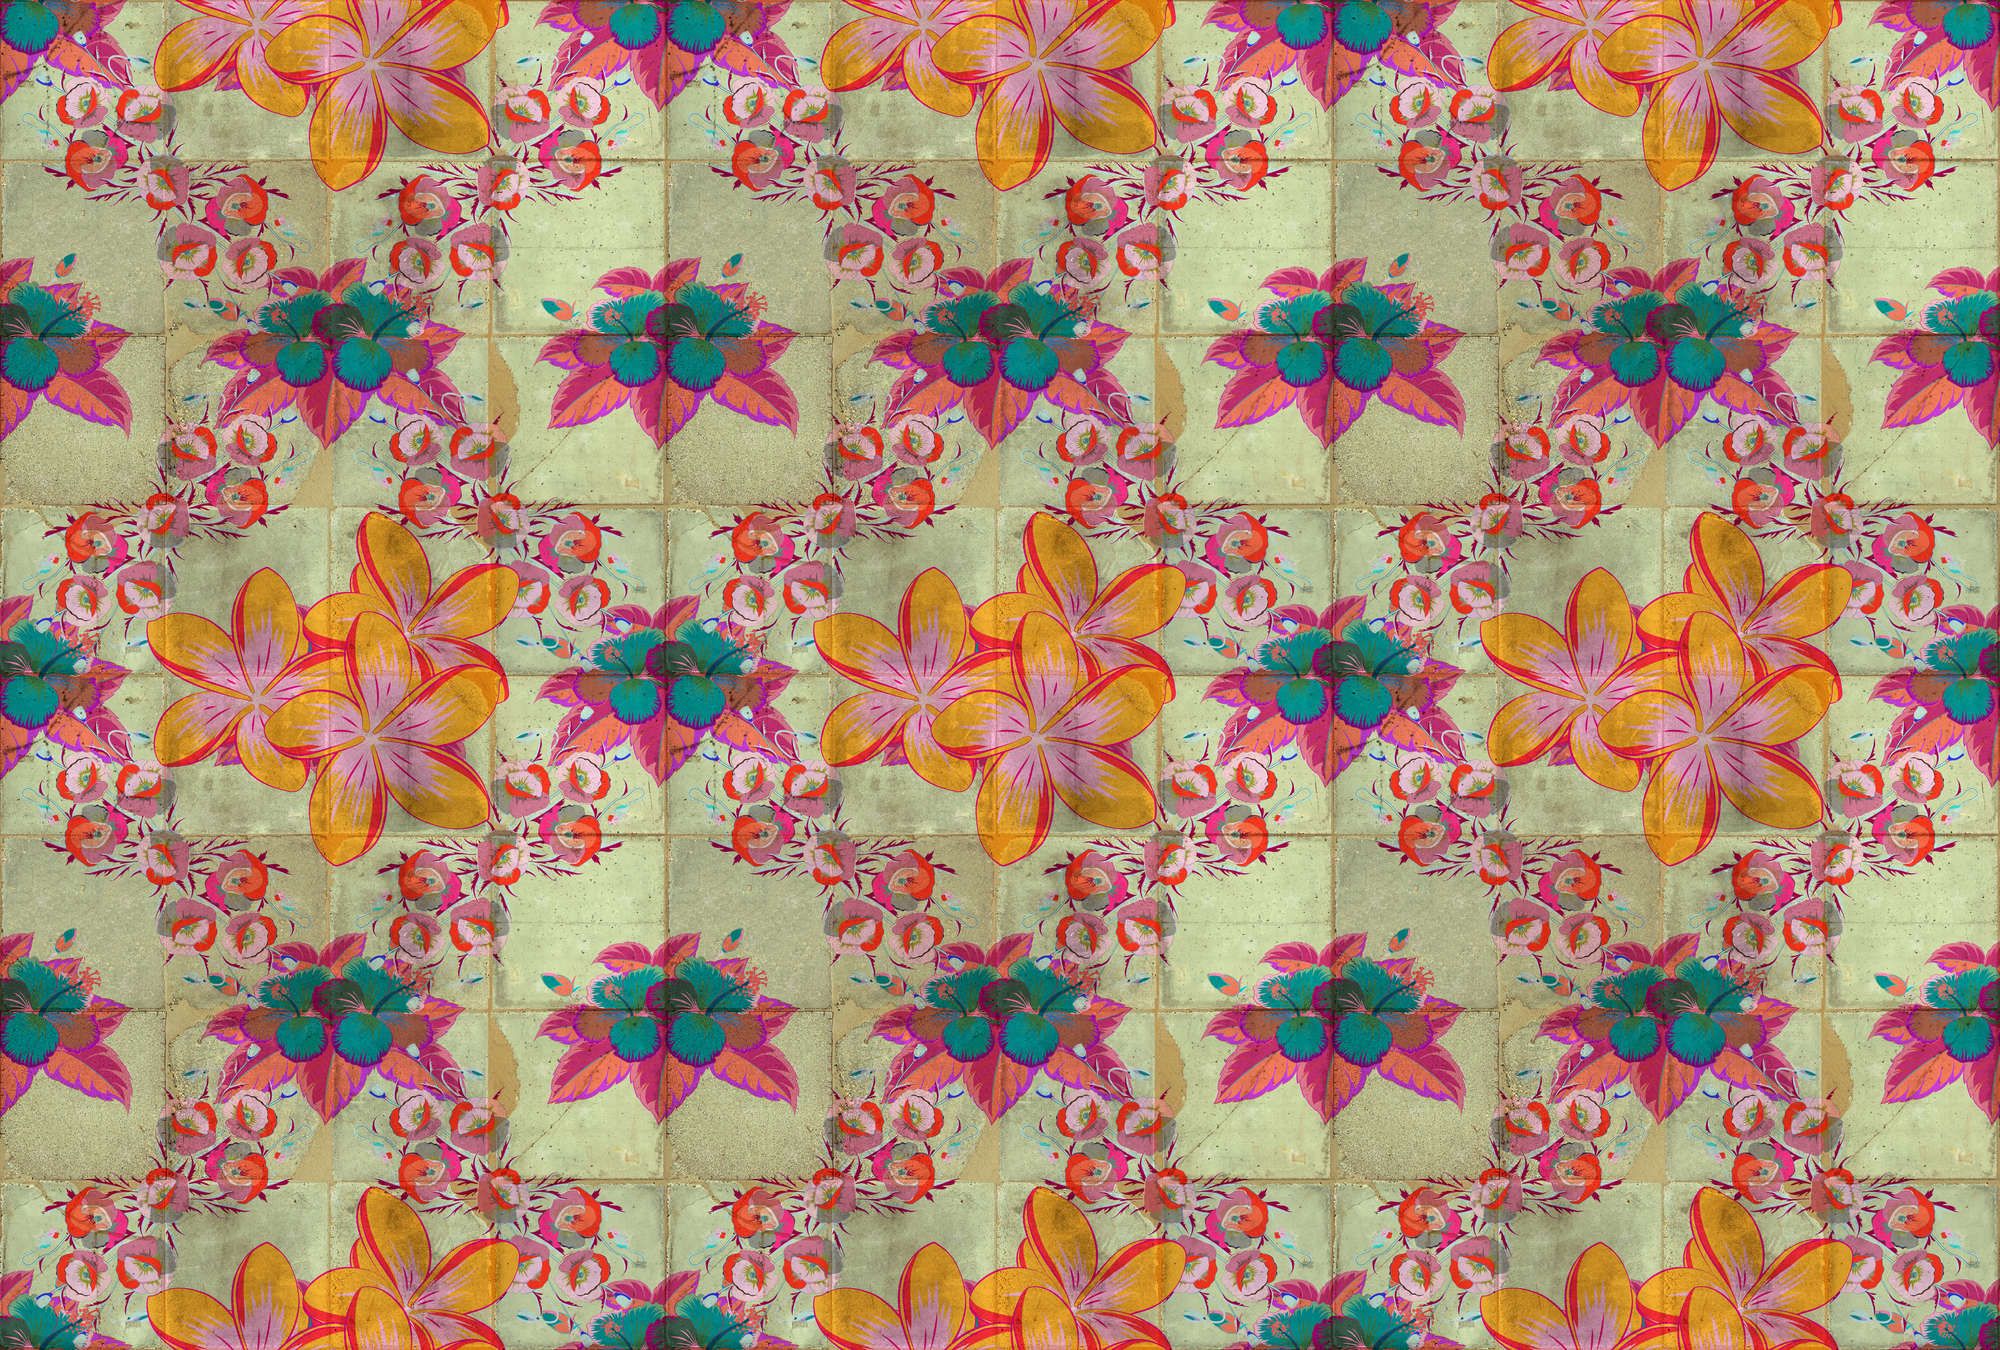             papier peint en papier panoramique »jolie« - dessin de fleurs avec effet kaléidoscopique sur structure de carreaux de béton - intissé mat et lisse
        